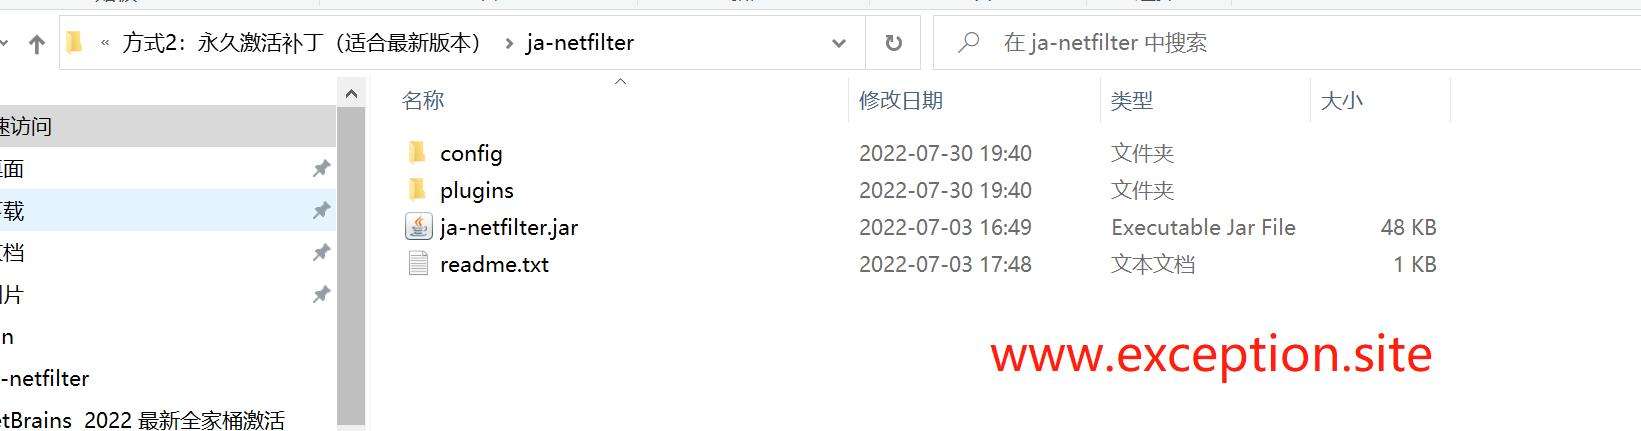 Webstorm 2022.2.2 激活脚本文件夹